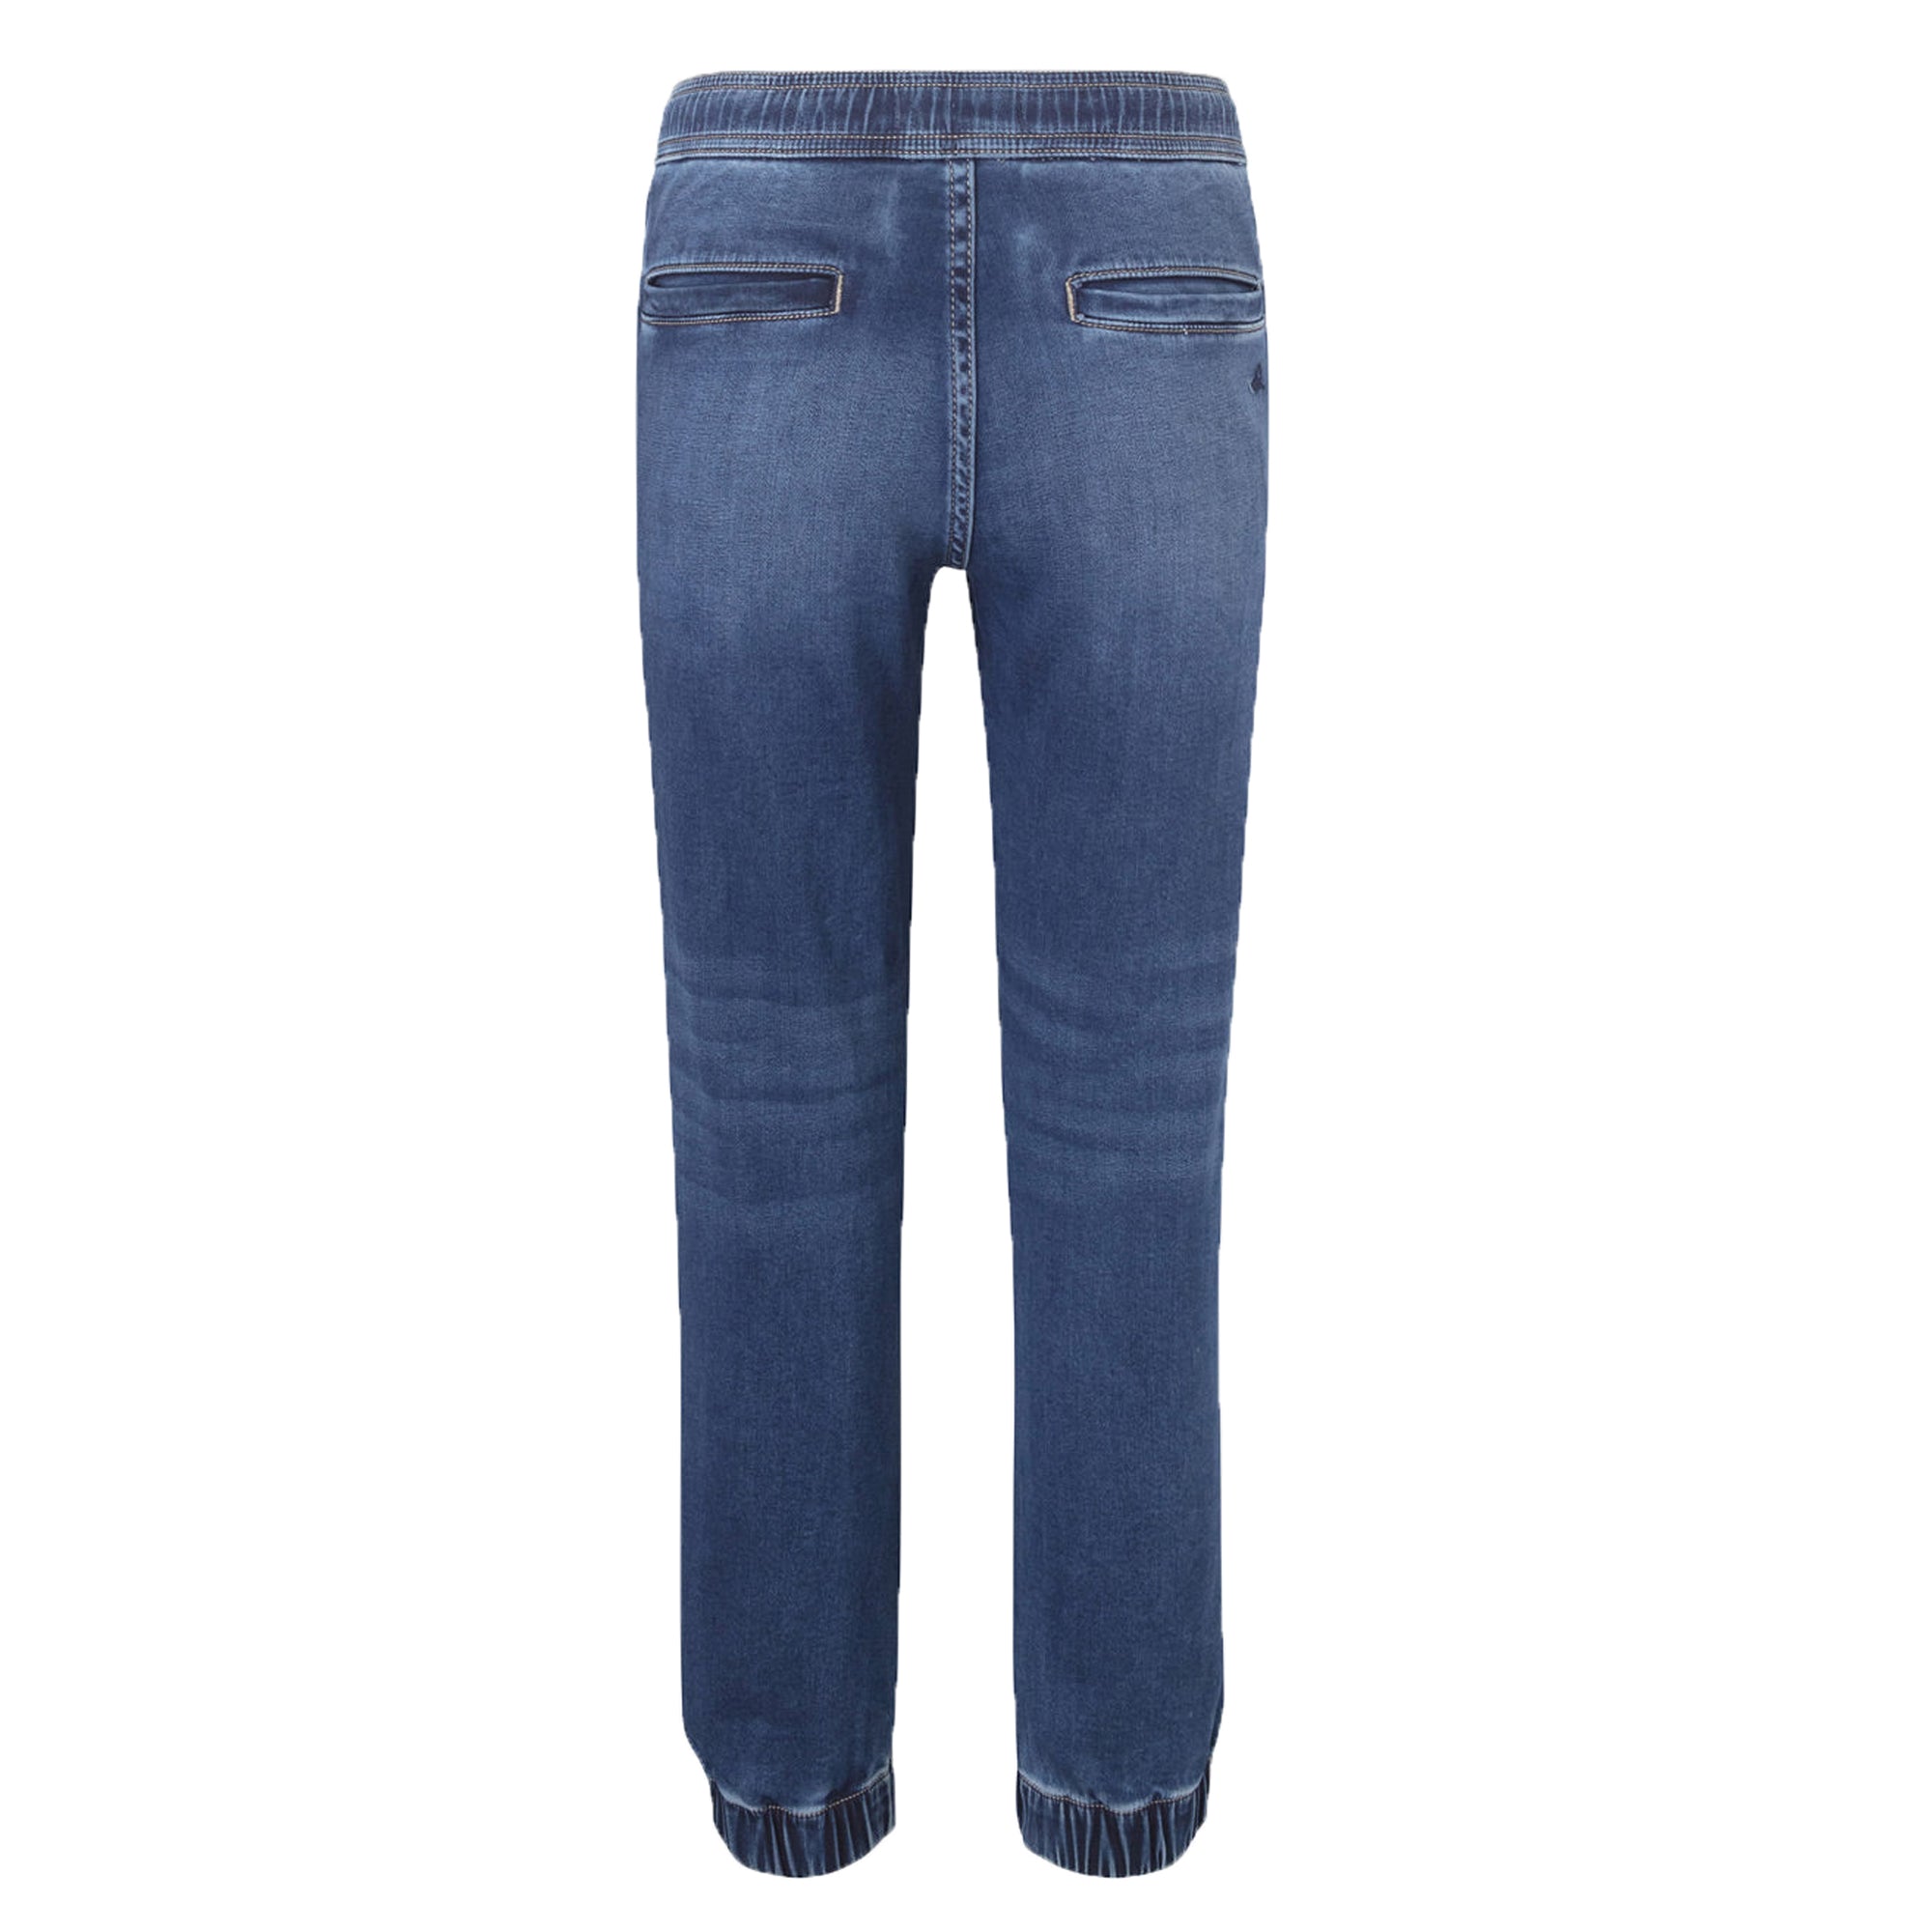 DL1961 Jackson Jeans